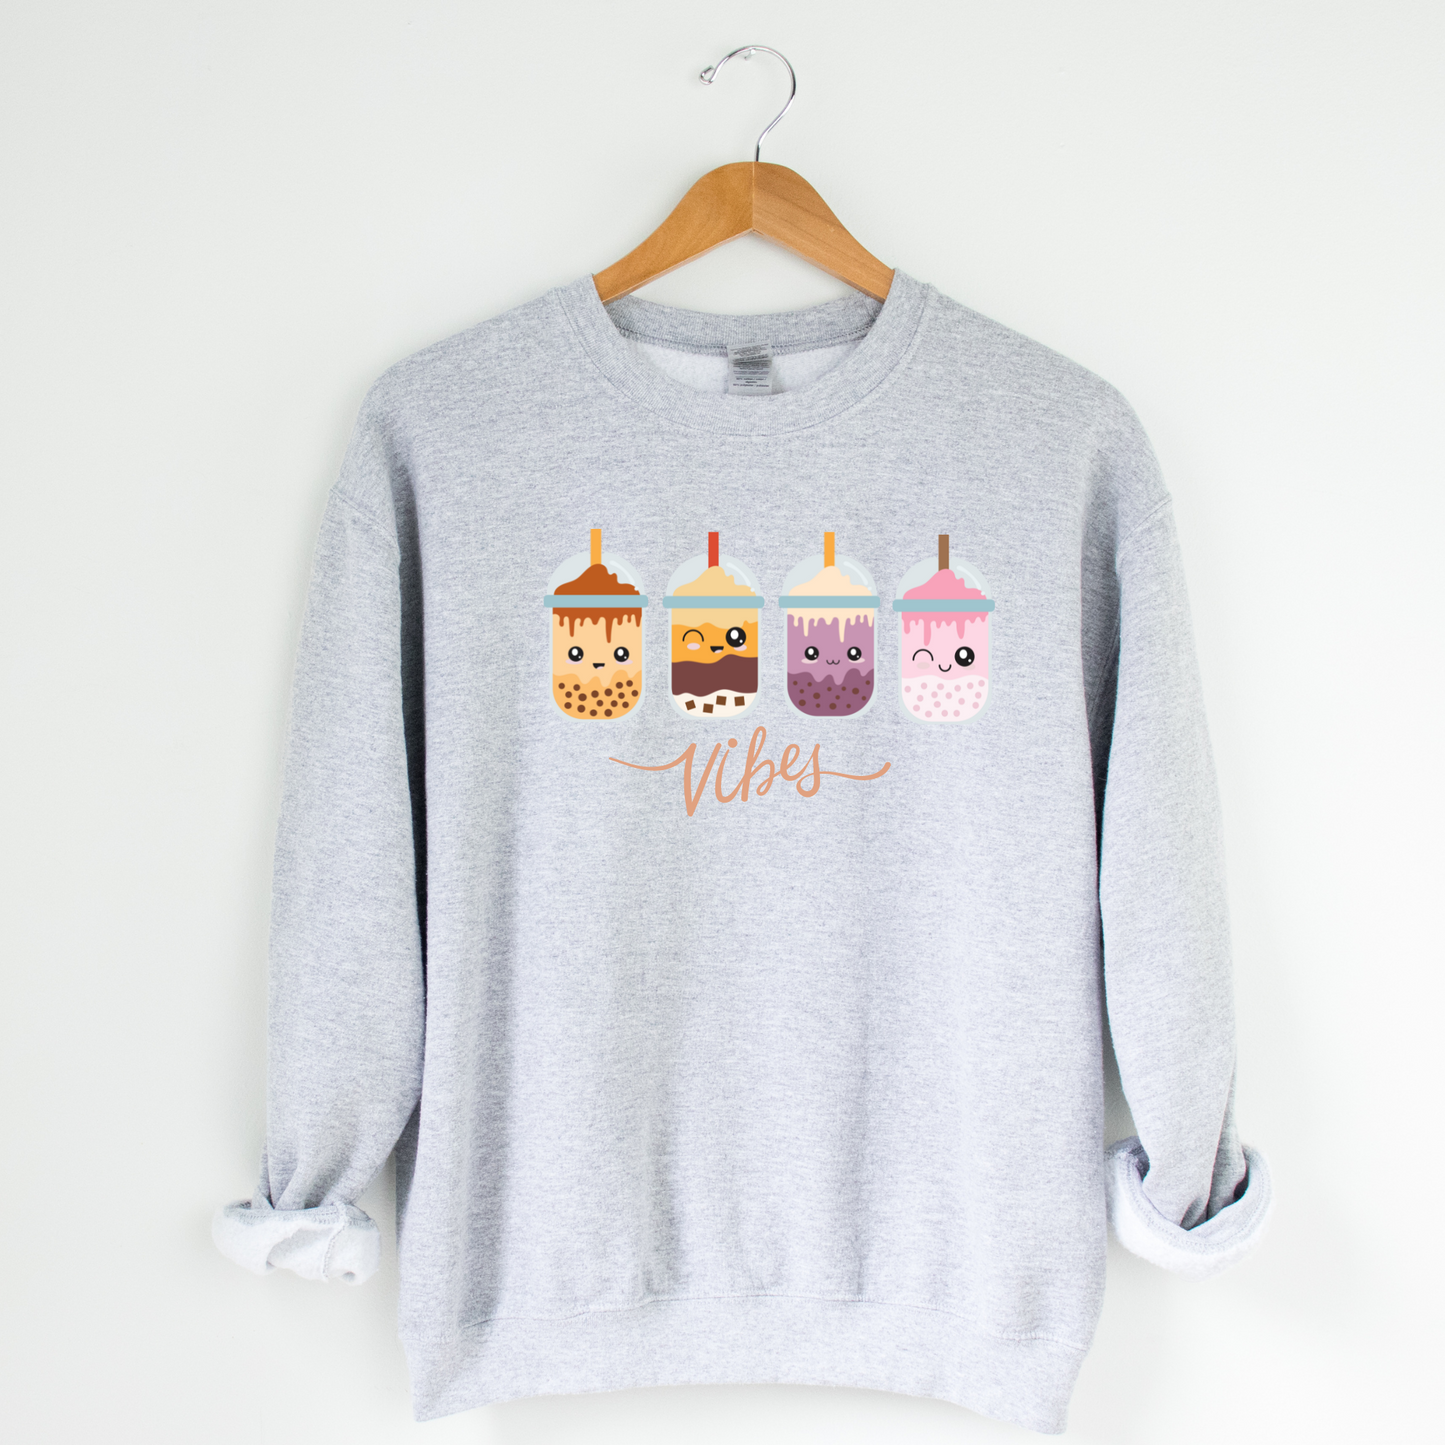 Bubble Tea Vibes Crew Neck Graphic Sweater